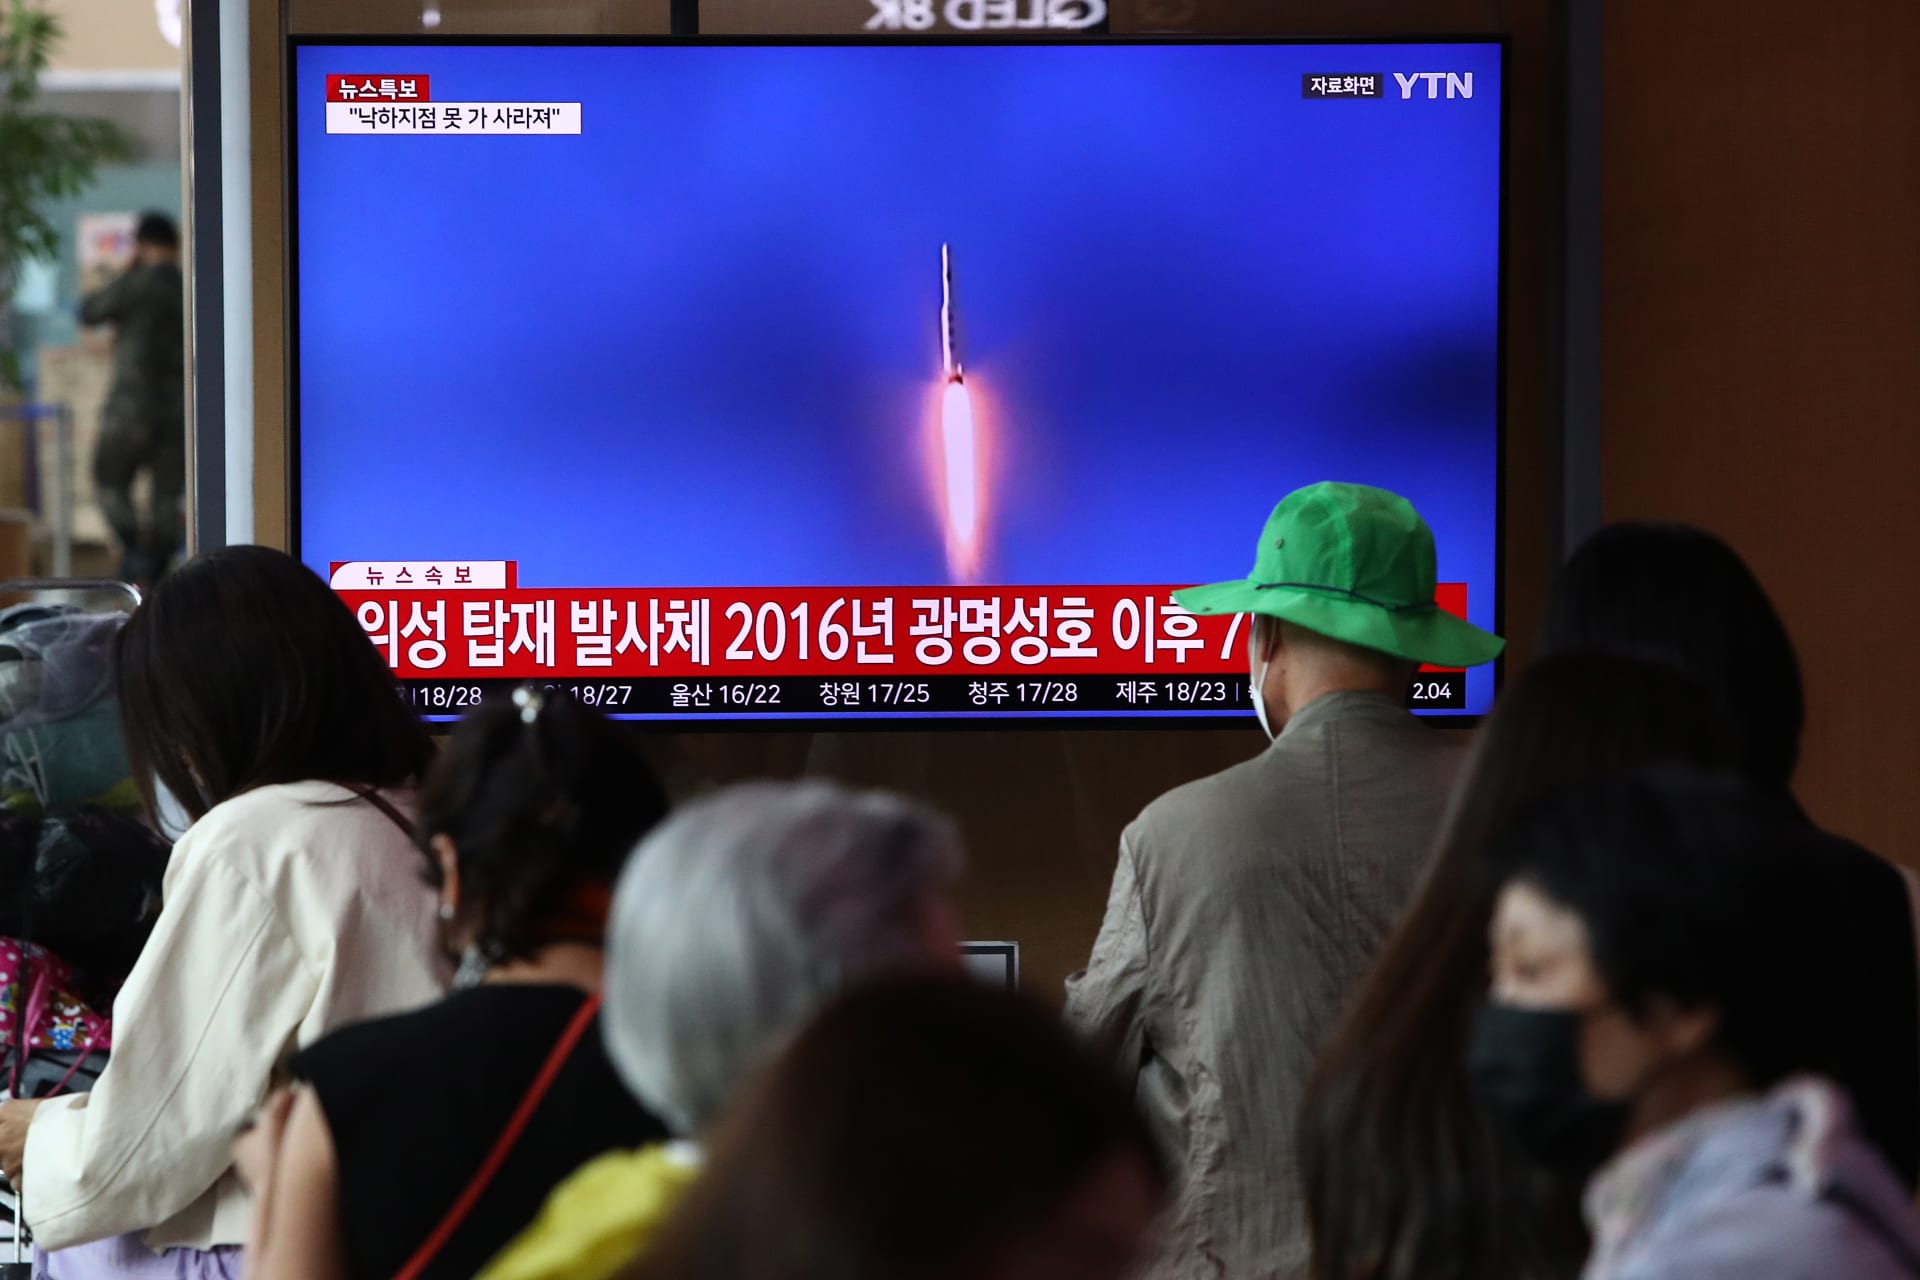 اليابان تعلن سقوط صاروخين بالييستيين أطلقتهما كوريا الشمالية في منطقتها الاقتصادية